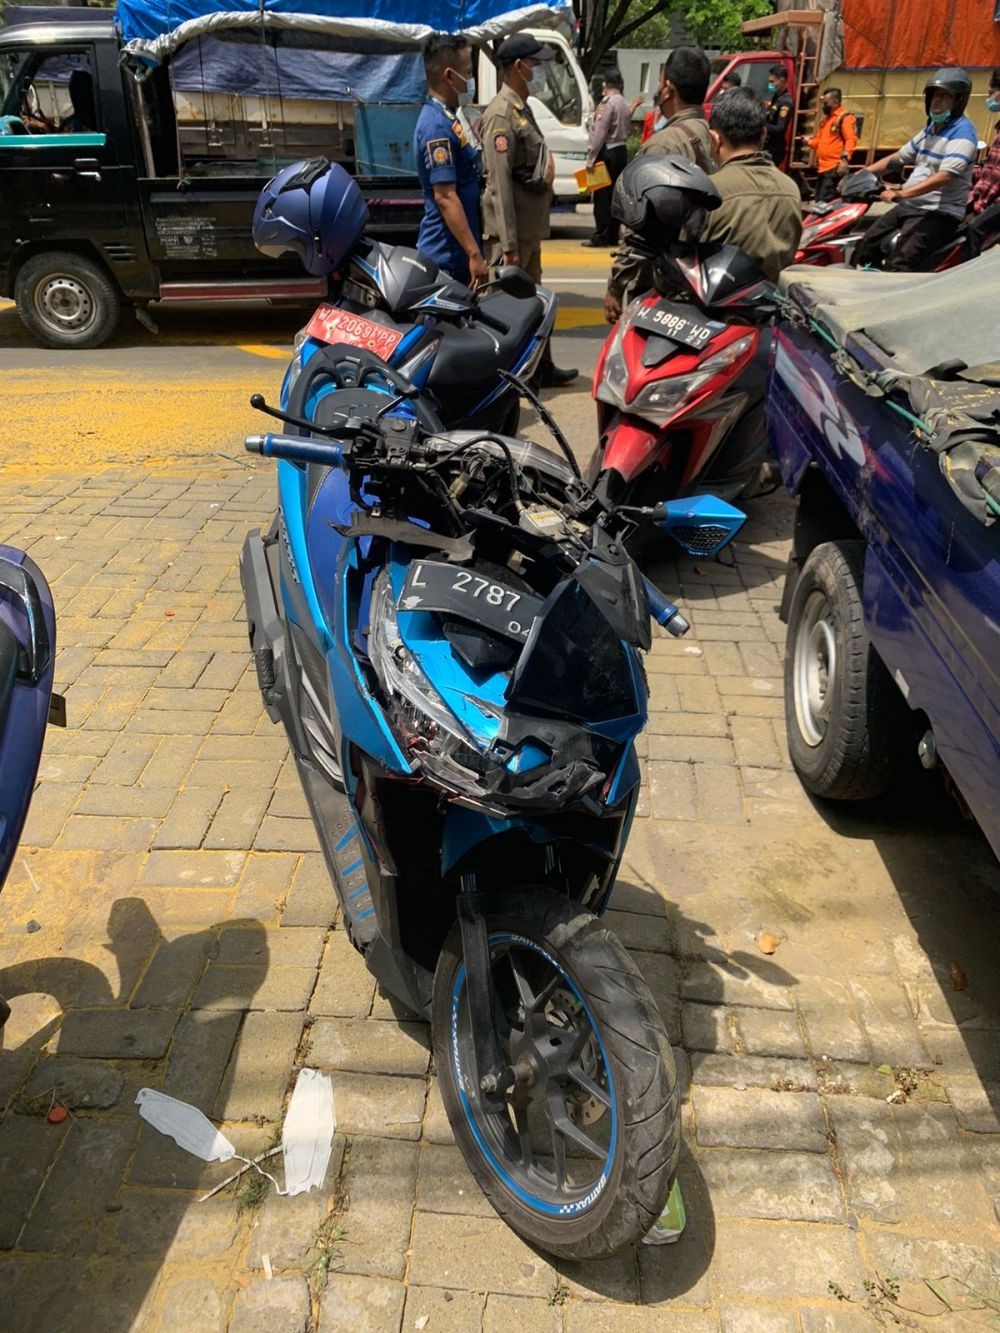 Tabrakan Beruntun di Surabaya, 2 Pemotor Tewas di Tempat